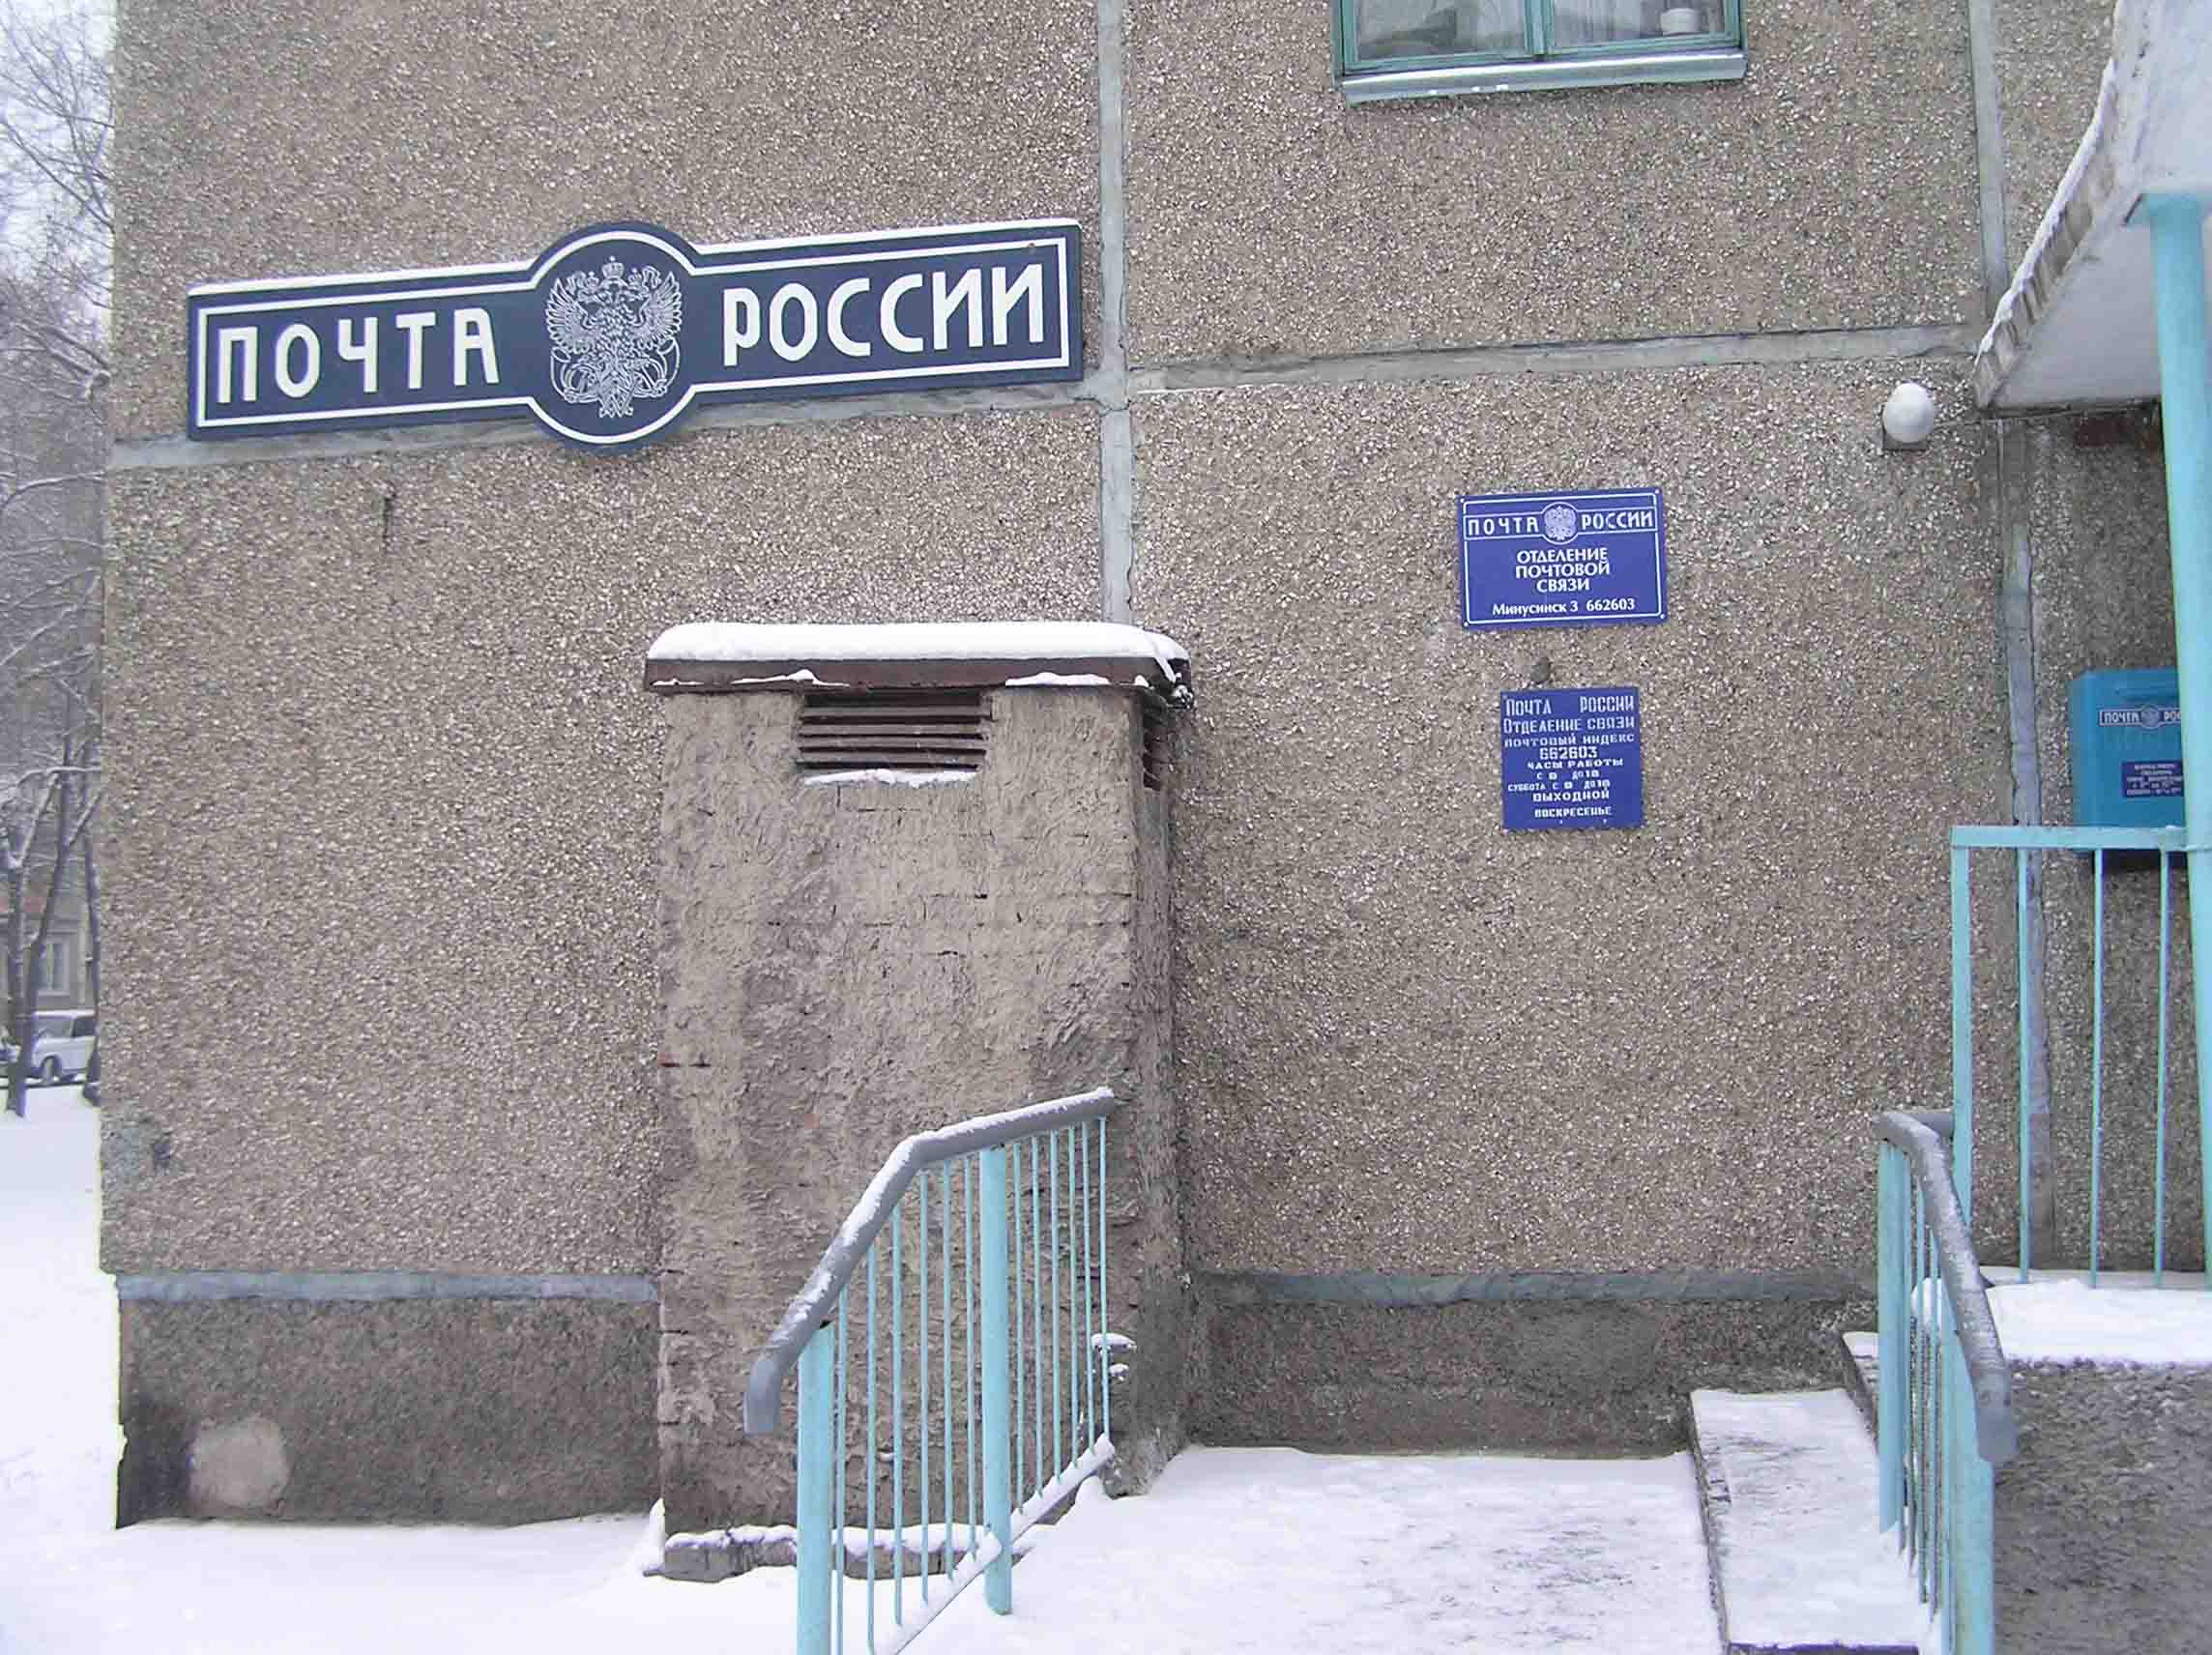 ВХОД, отделение почтовой связи 662603, Красноярский край, Минусинск